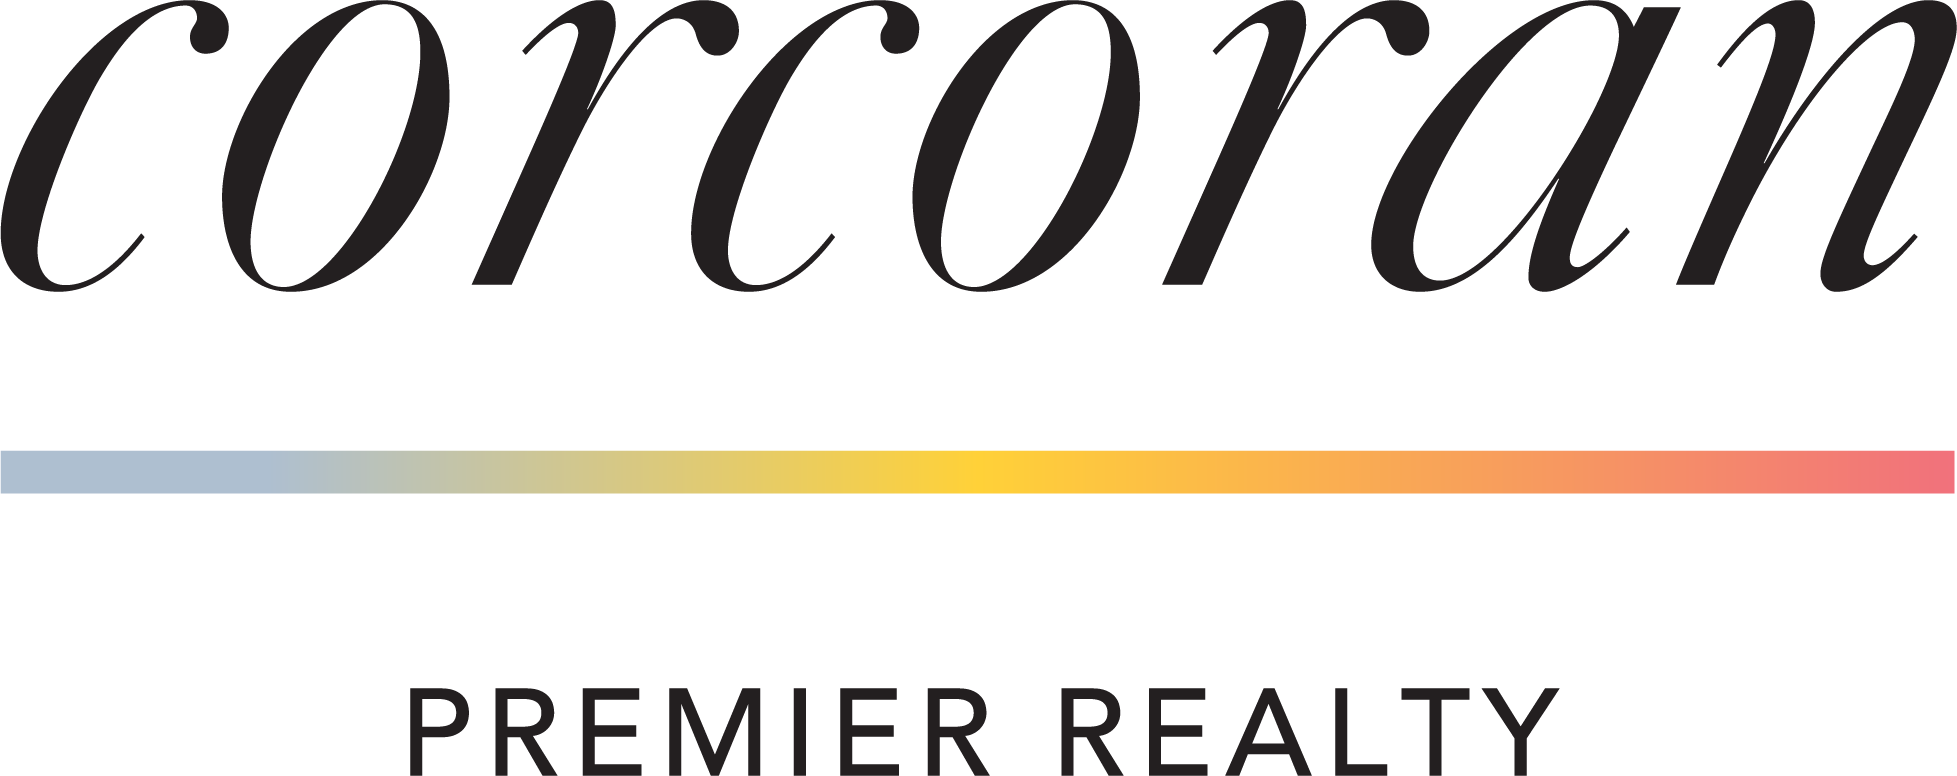 Corcoran Premier Realty logo